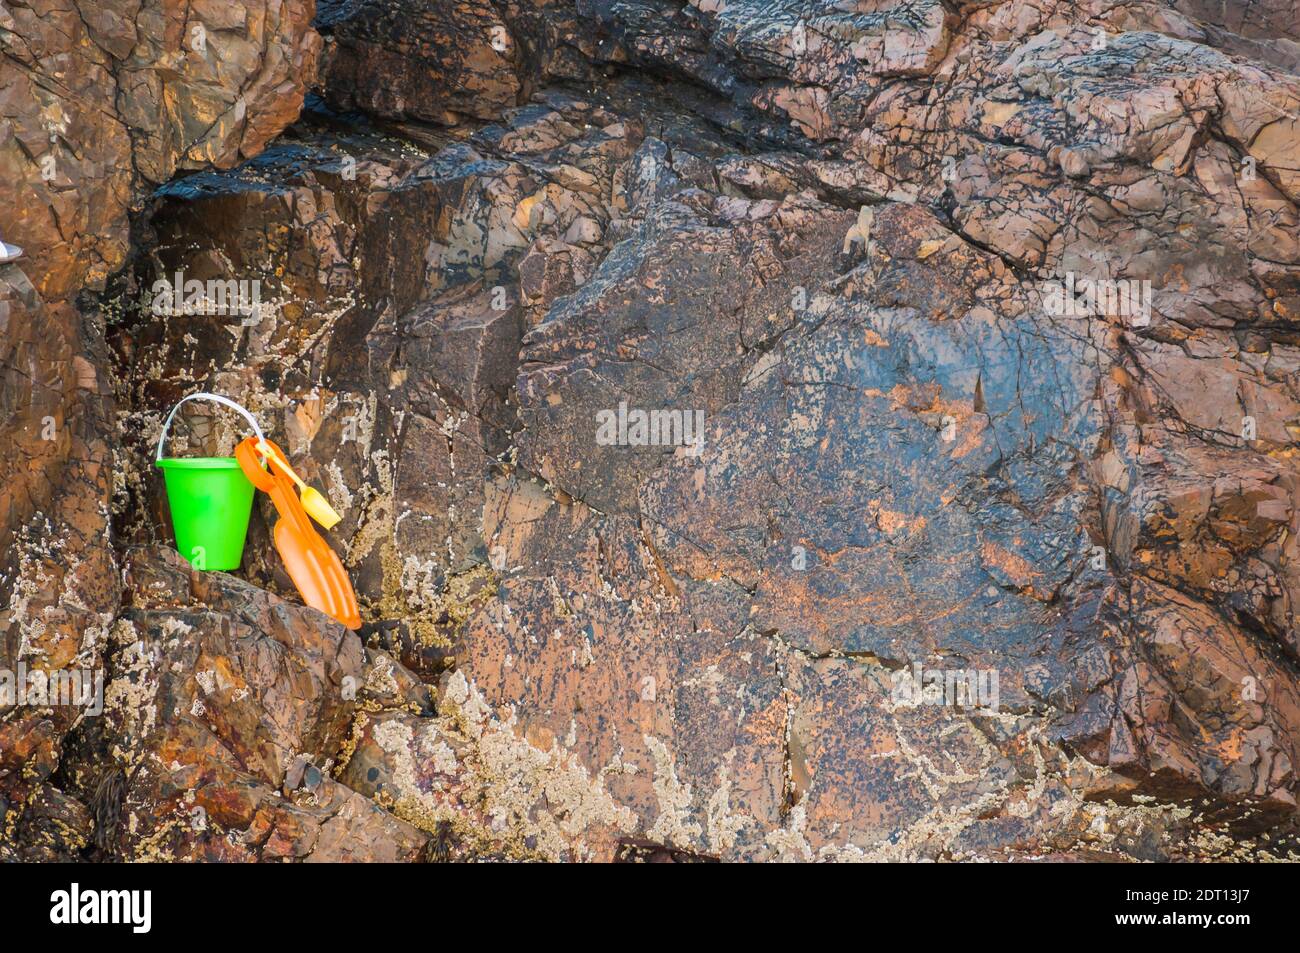 Orangefarbene Schaufel und grüner Eimer im Felsen Stockfoto